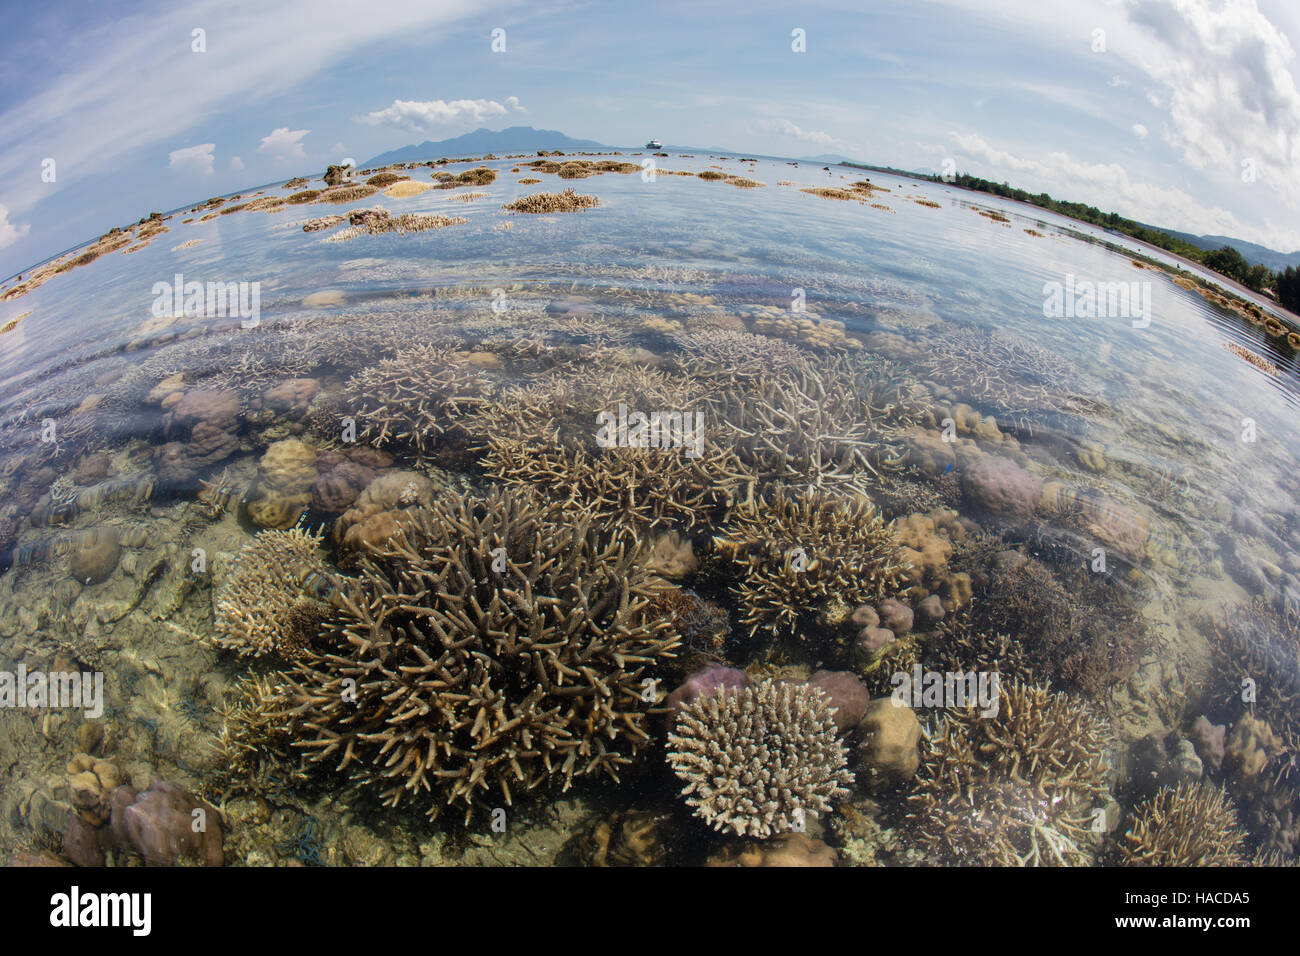 Una marea baja severa expone los corales formadores de arrecifes que crecen a lo largo del borde de Flores, en Indonesia. Foto de stock